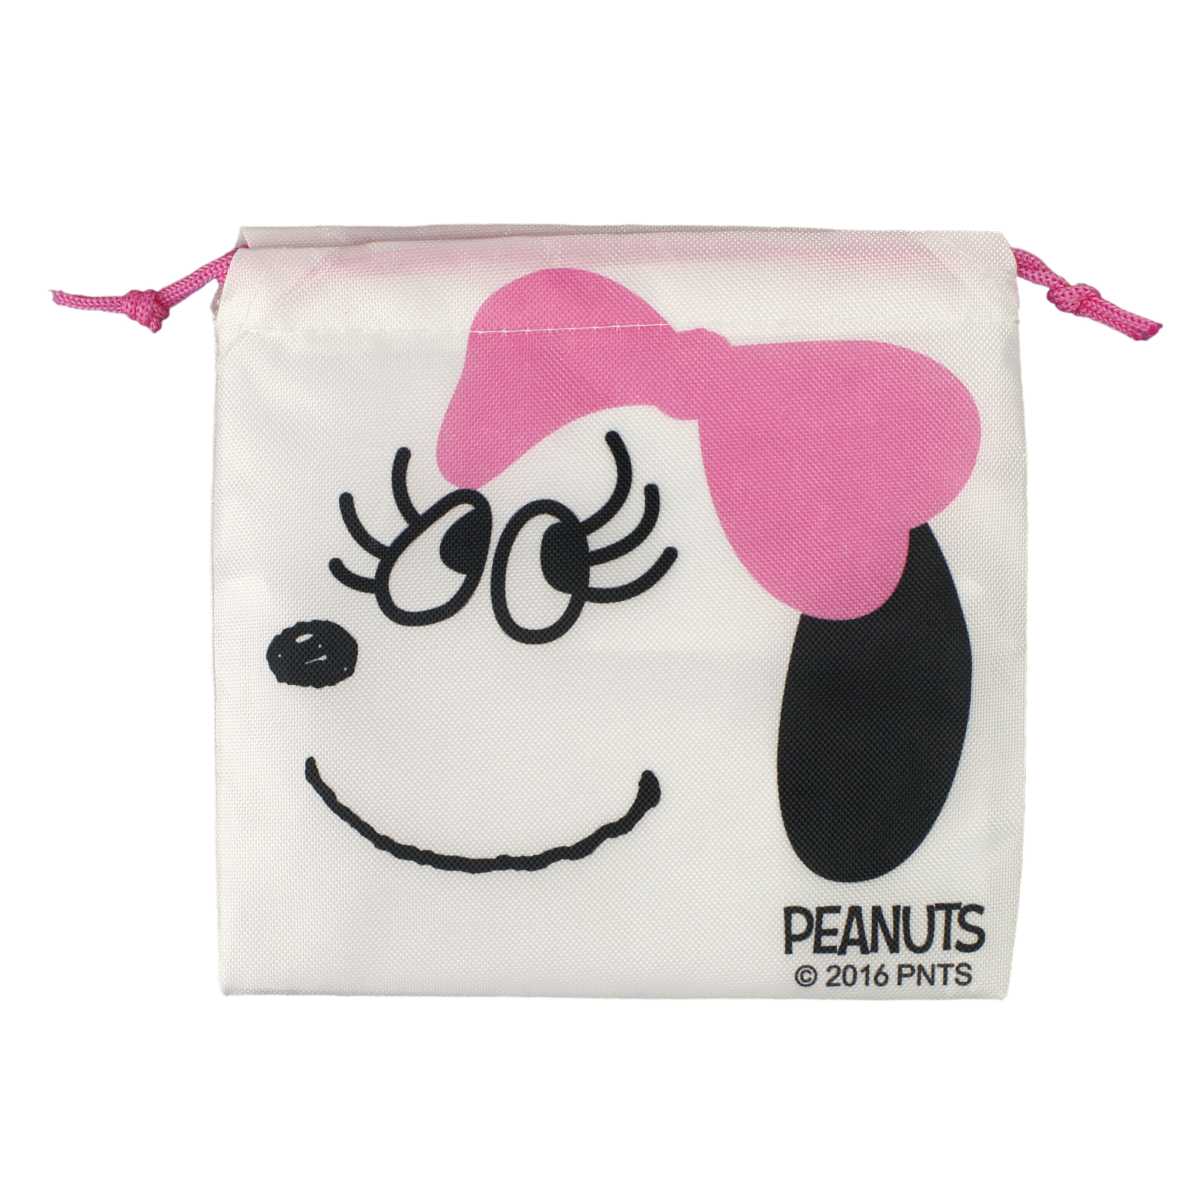 楽天市場 小物 スヌーピー Snoopy Peanuts ミニ巾着 コップ袋 化粧 ポーチ 巾着 小物 入れ 男の子 女の子 スヌーピー D柄 15x15サイズ ガールズ キッズ 小物 全8色 ピアニッシモ